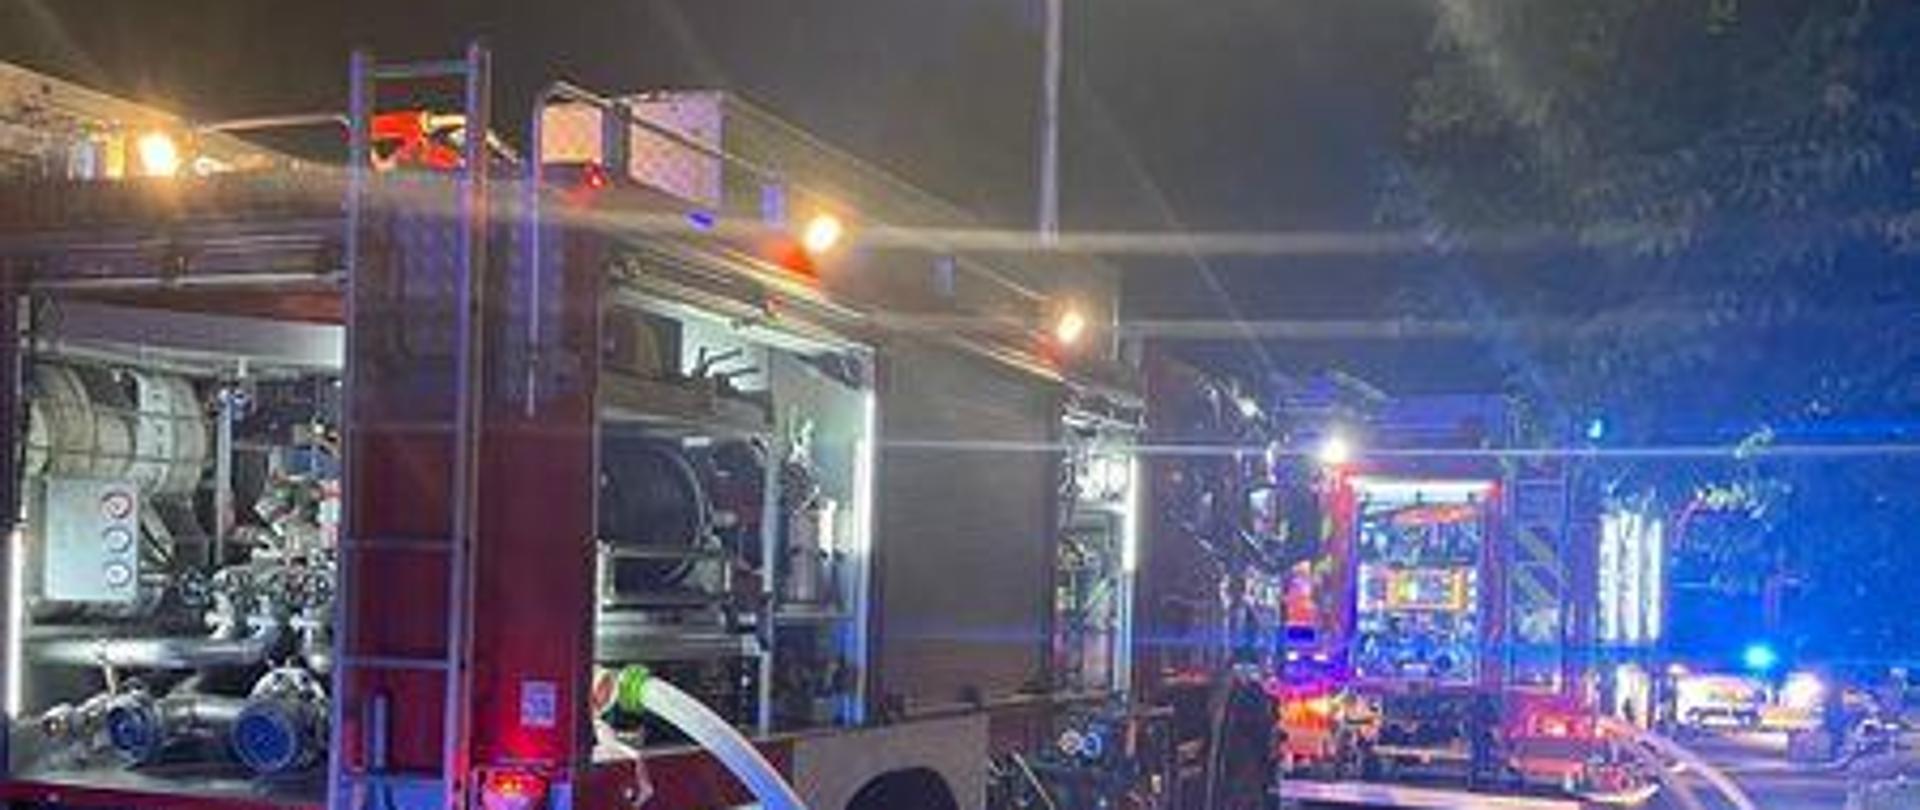 Zdjęcie przedstawia pojazdy pożarnicze podczas pożaru poddasza wielorodzinnego budynku mieszkalnego.